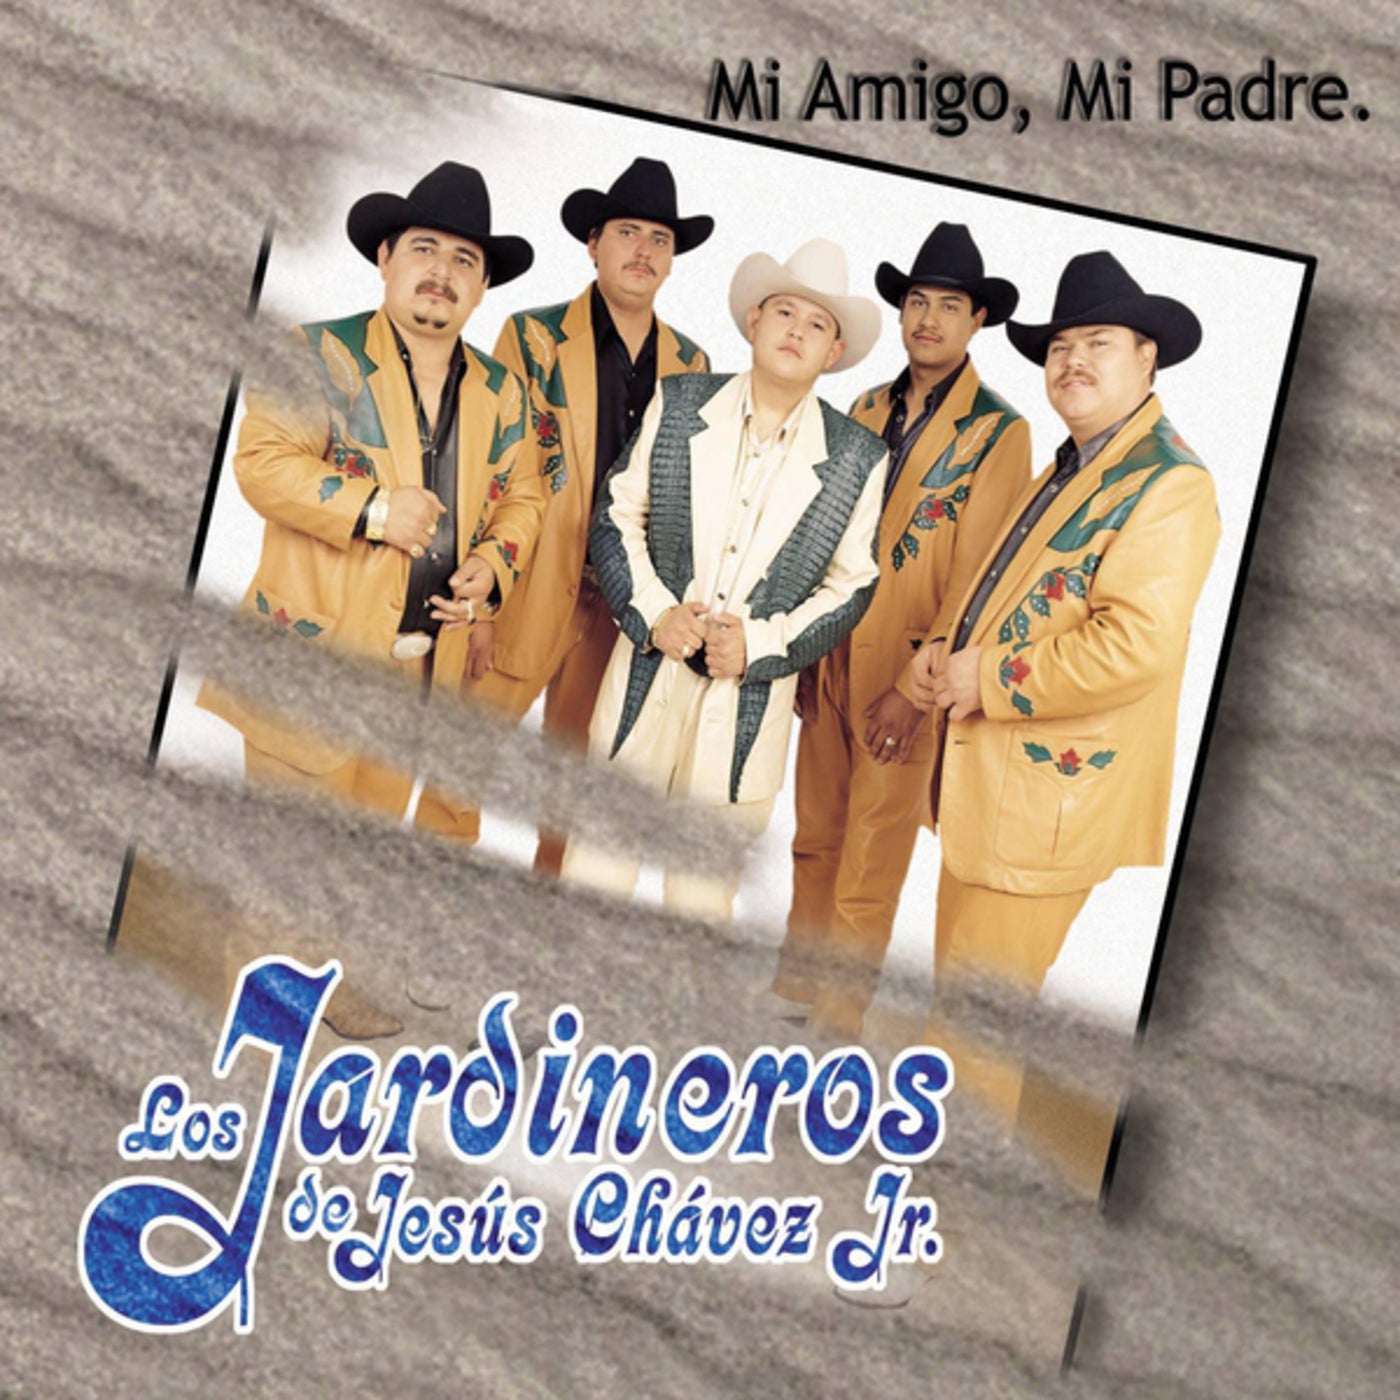 Mi Amigo Mi Padre by Los Jardineros De Jesus Chaves JR. on Beatsource